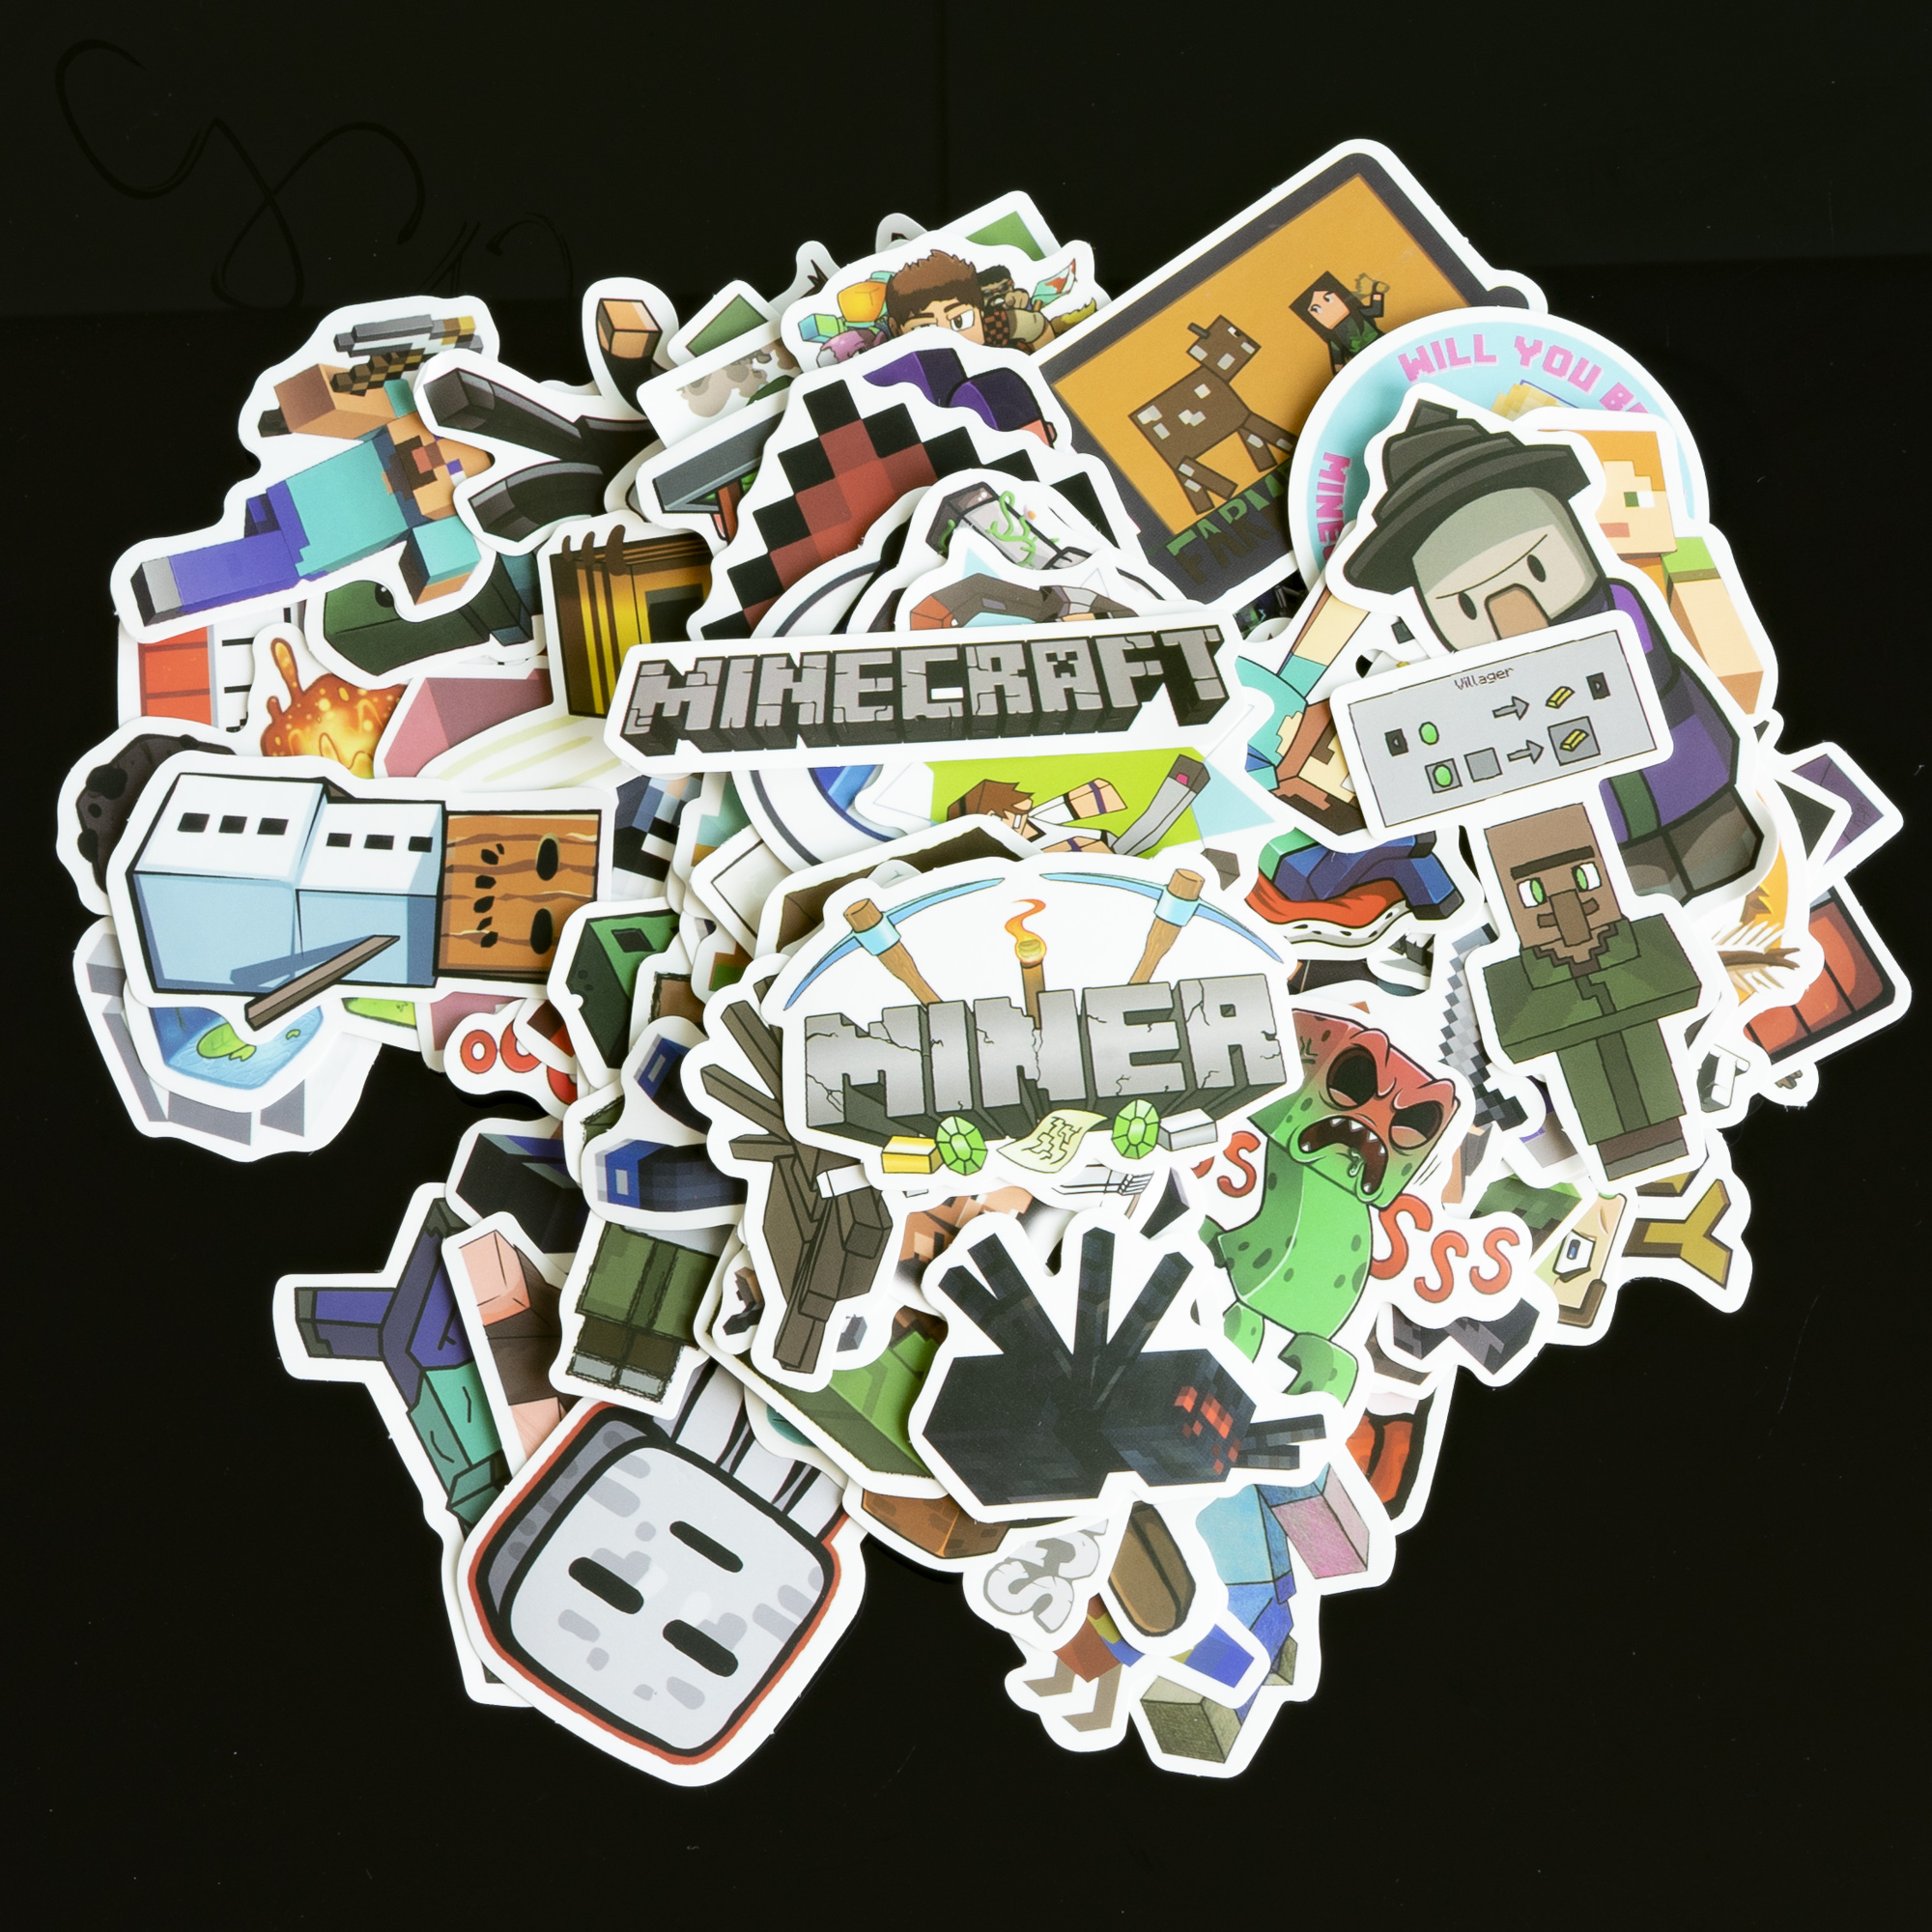 Sticker chủ đề Minecraft, 1 bộ 20 sticker giao mẫu ngẫu nhiên, trang trí vali du lịch, laptop, mũ bảo hiểm, đàn guitar, ukelele, macbook điện thoại chống nước 100% lâu phai